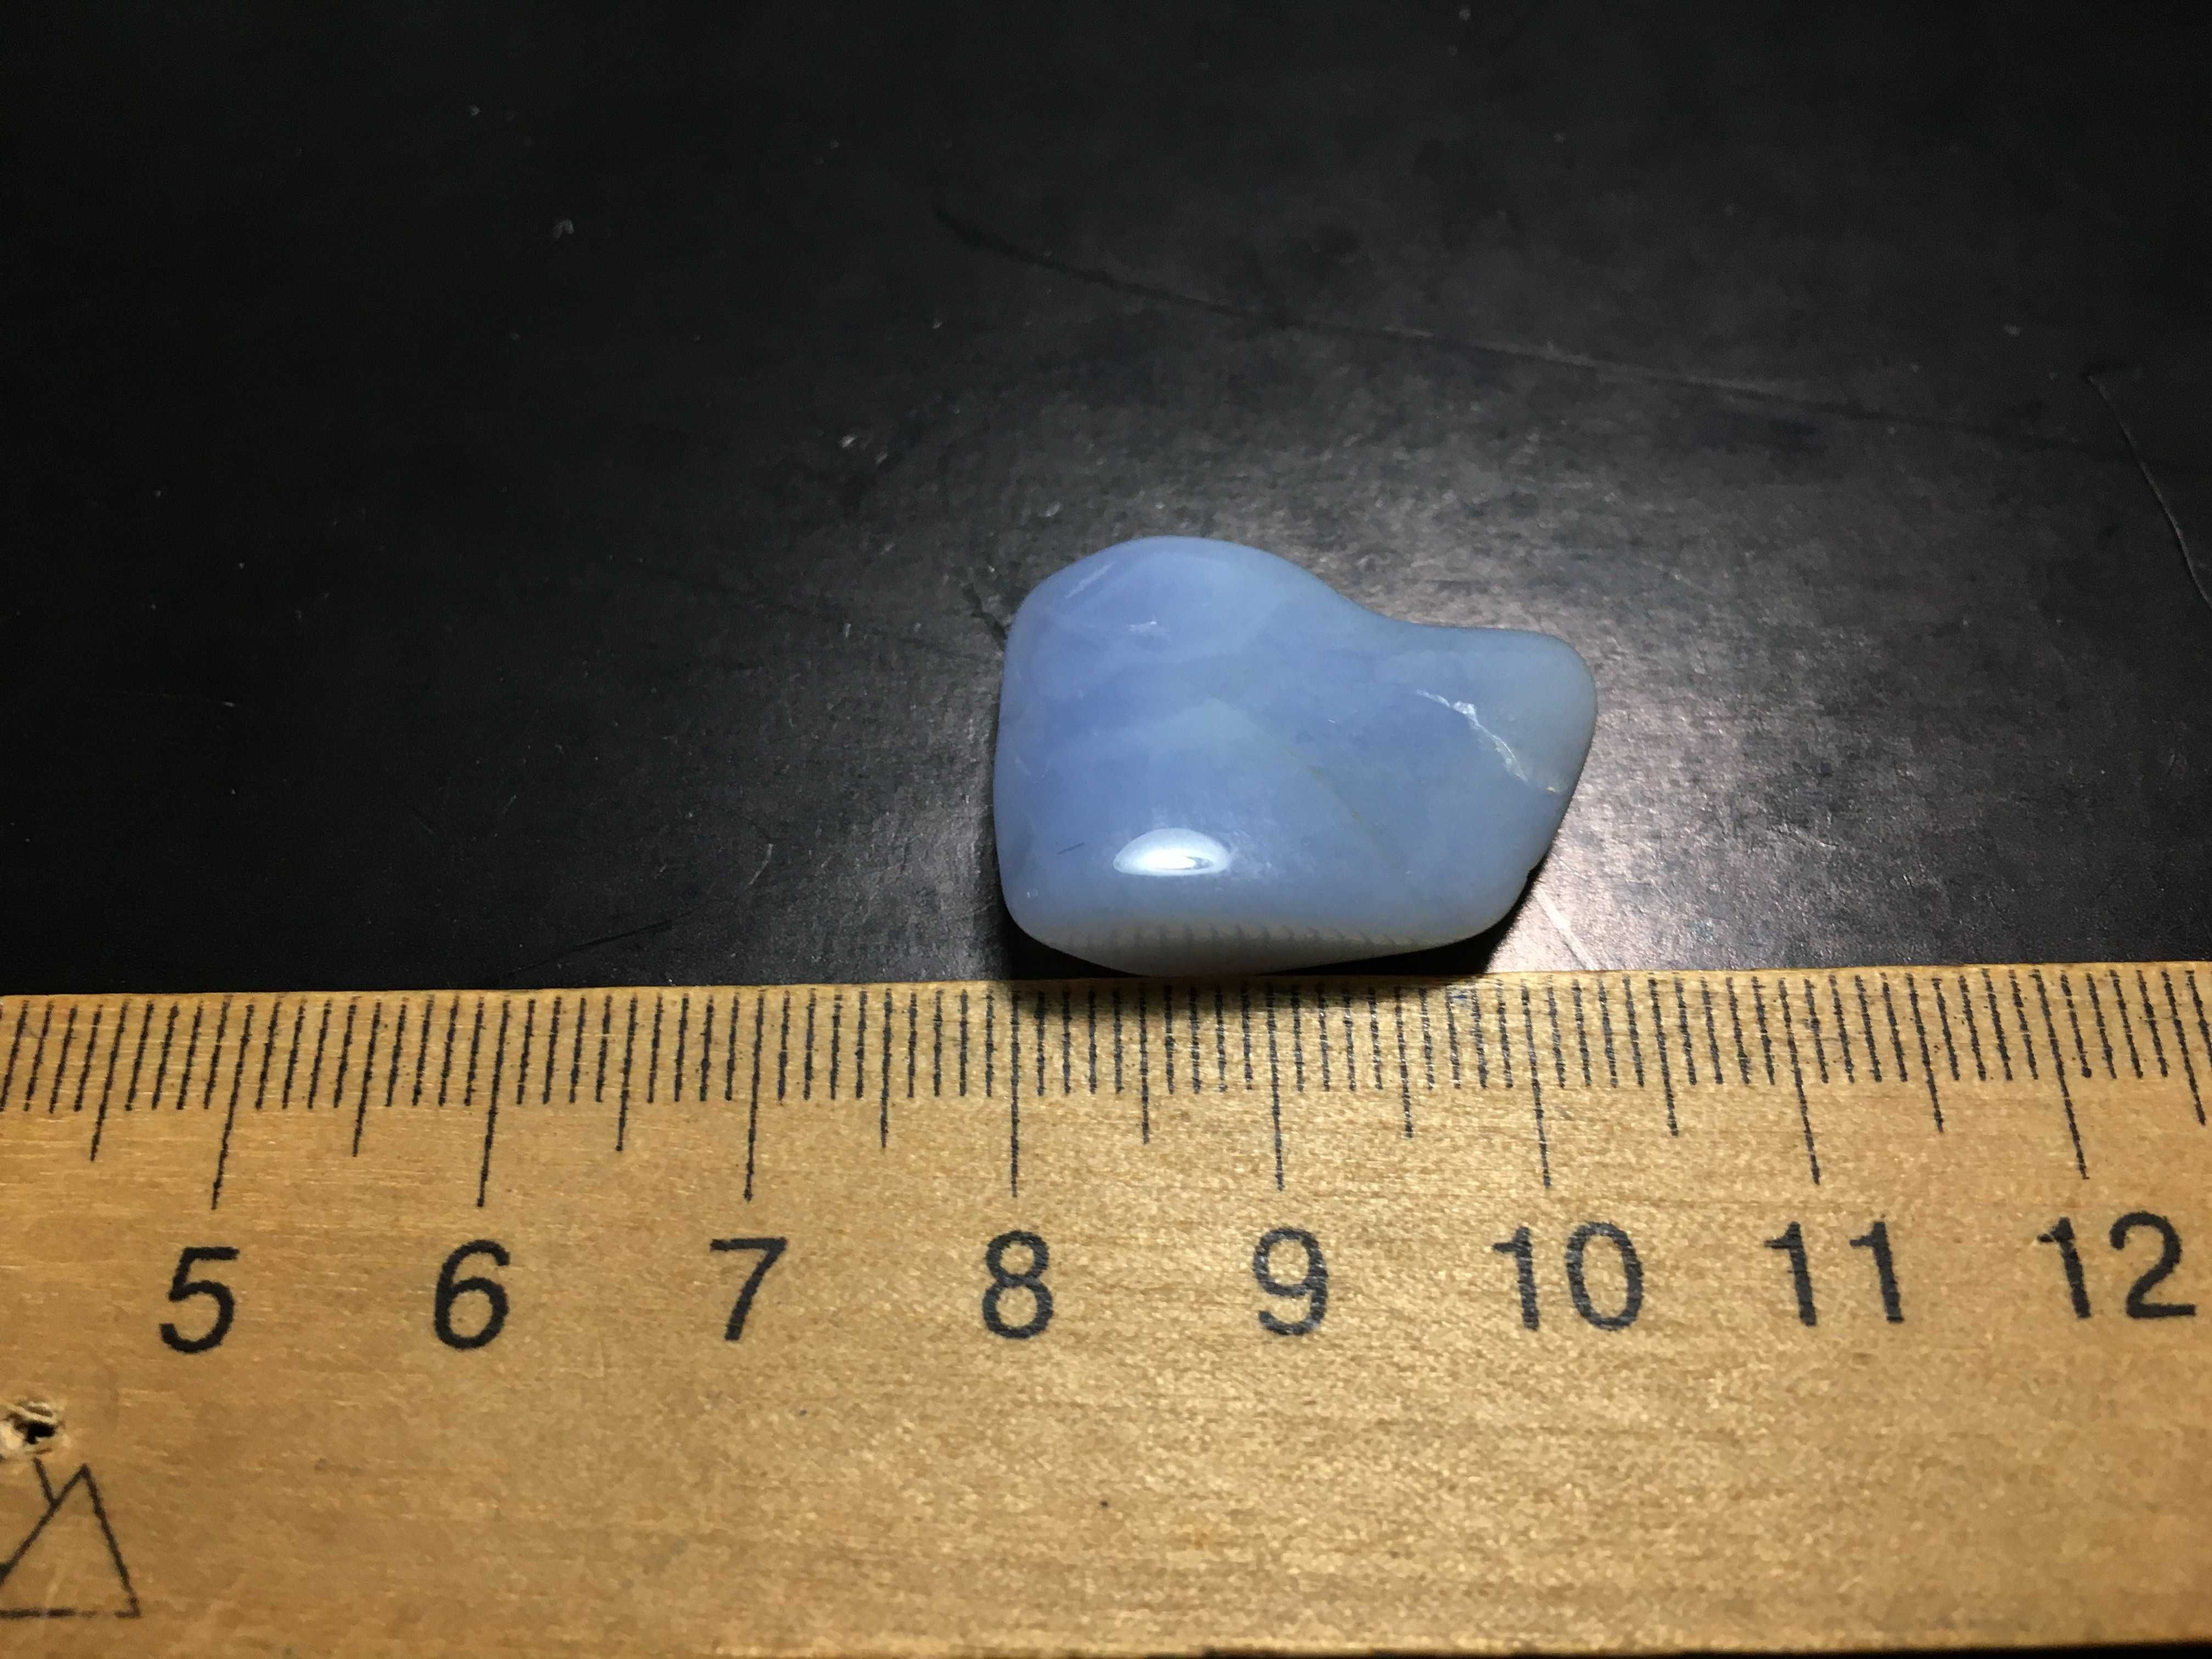 Синий камень сувенир минерал подарок